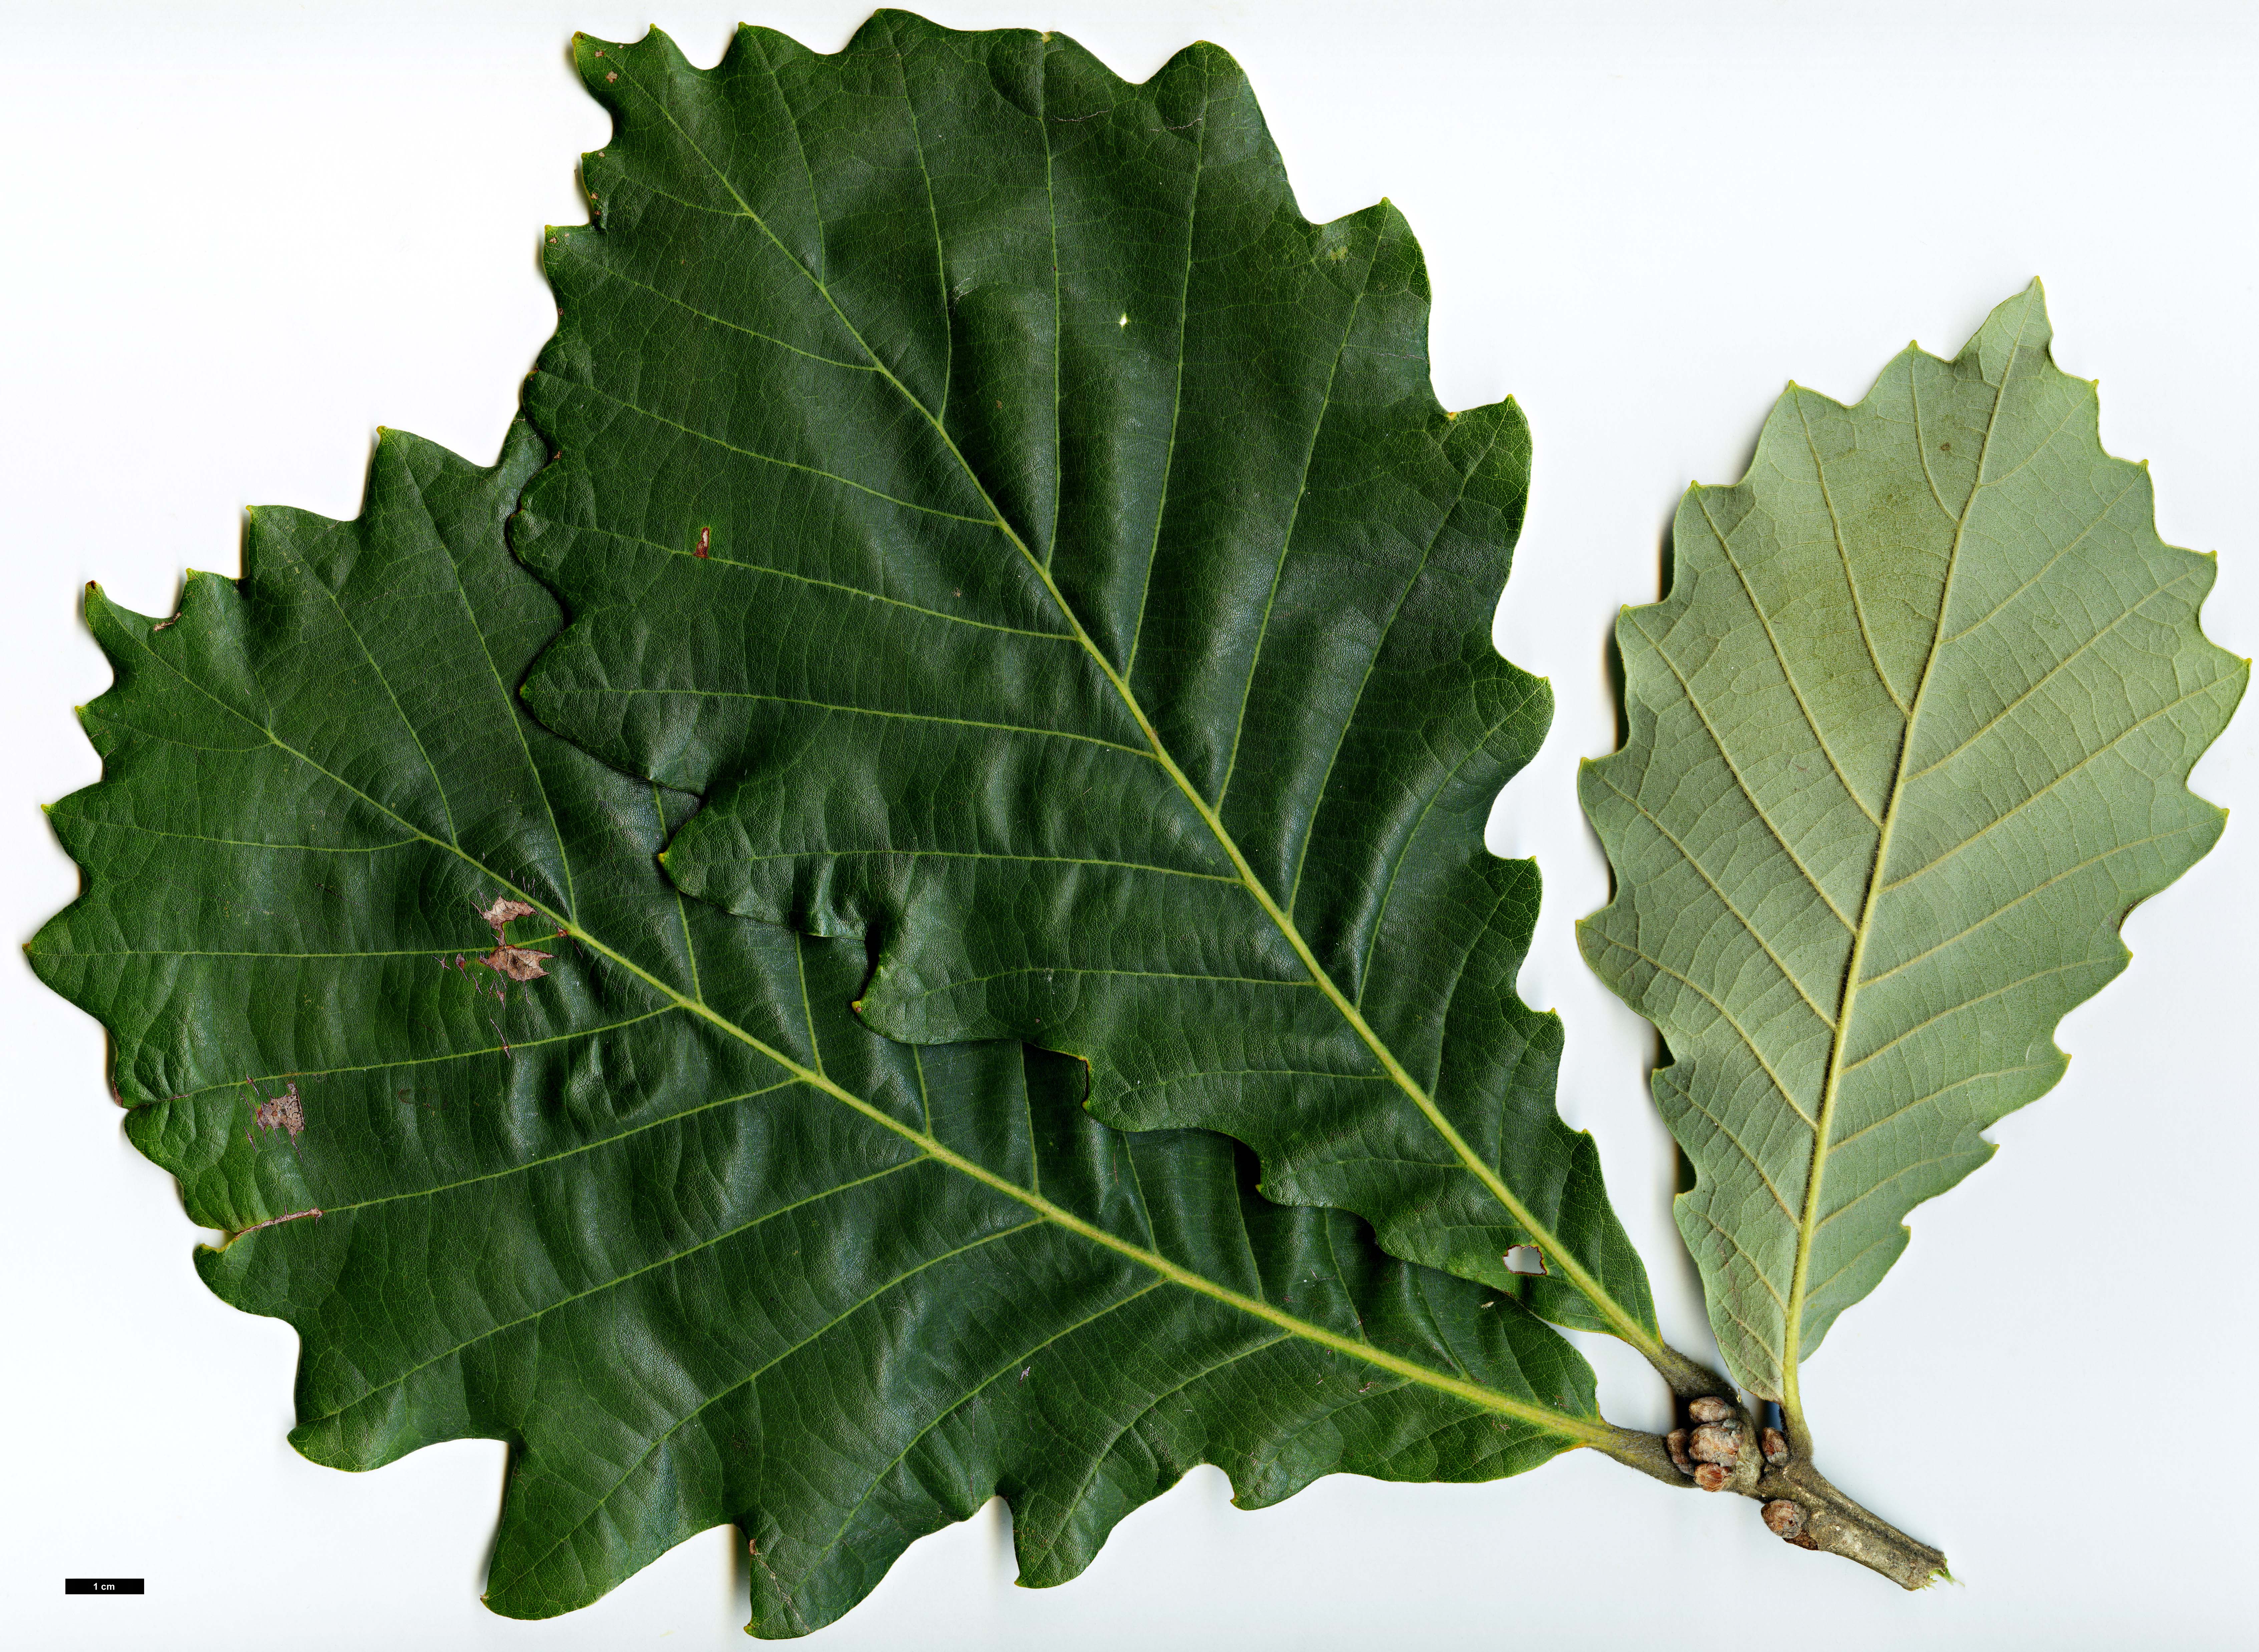 High resolution image: Family: Fagaceae - Genus: Quercus - Taxon: dentata - SpeciesSub: subsp. yunnanensis